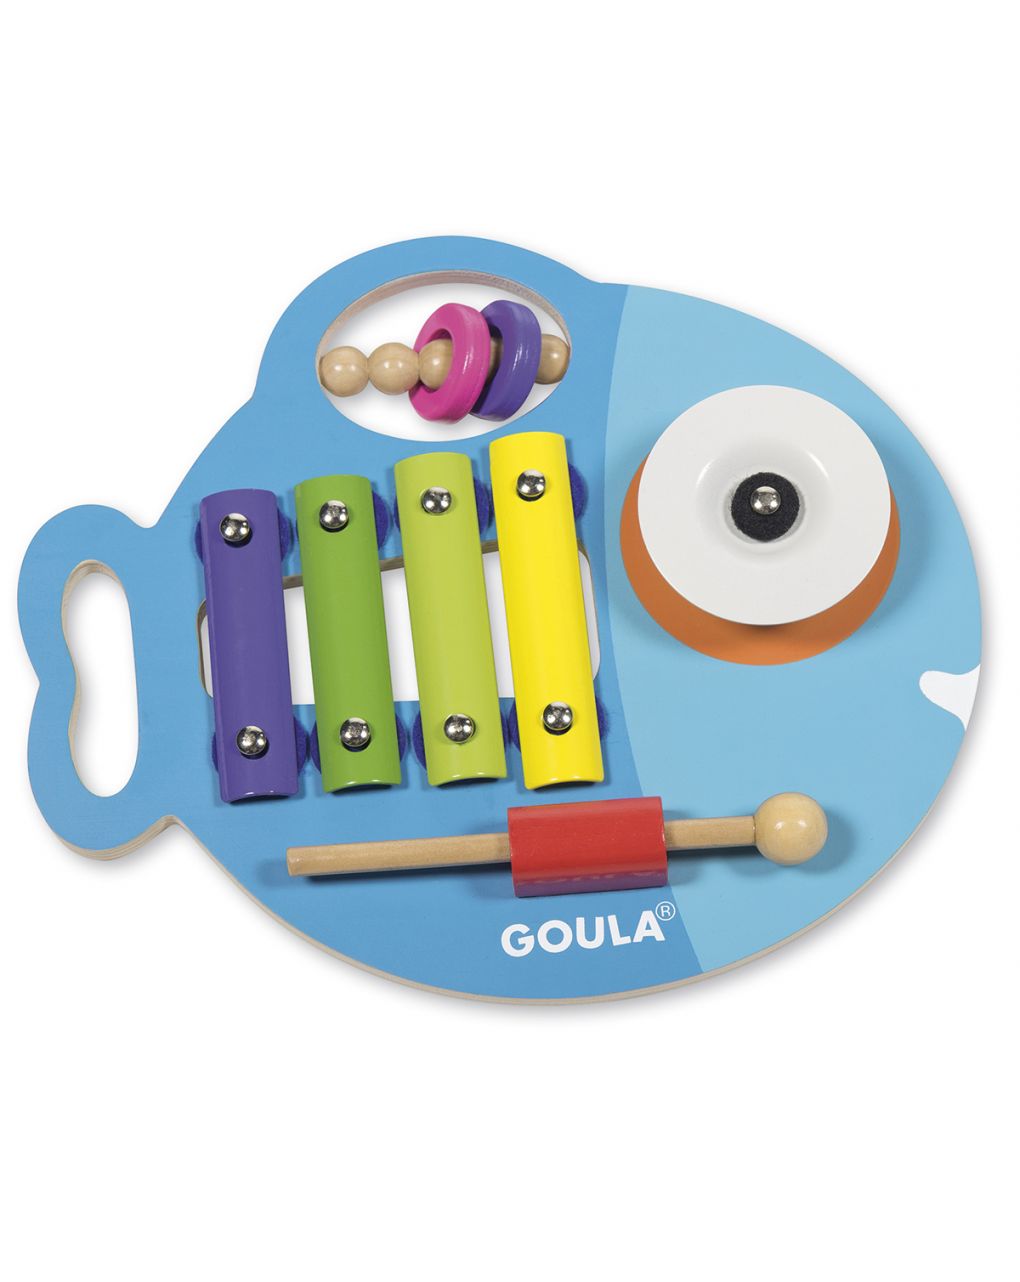 Goula - glupi musical 3 en 1 - Goula